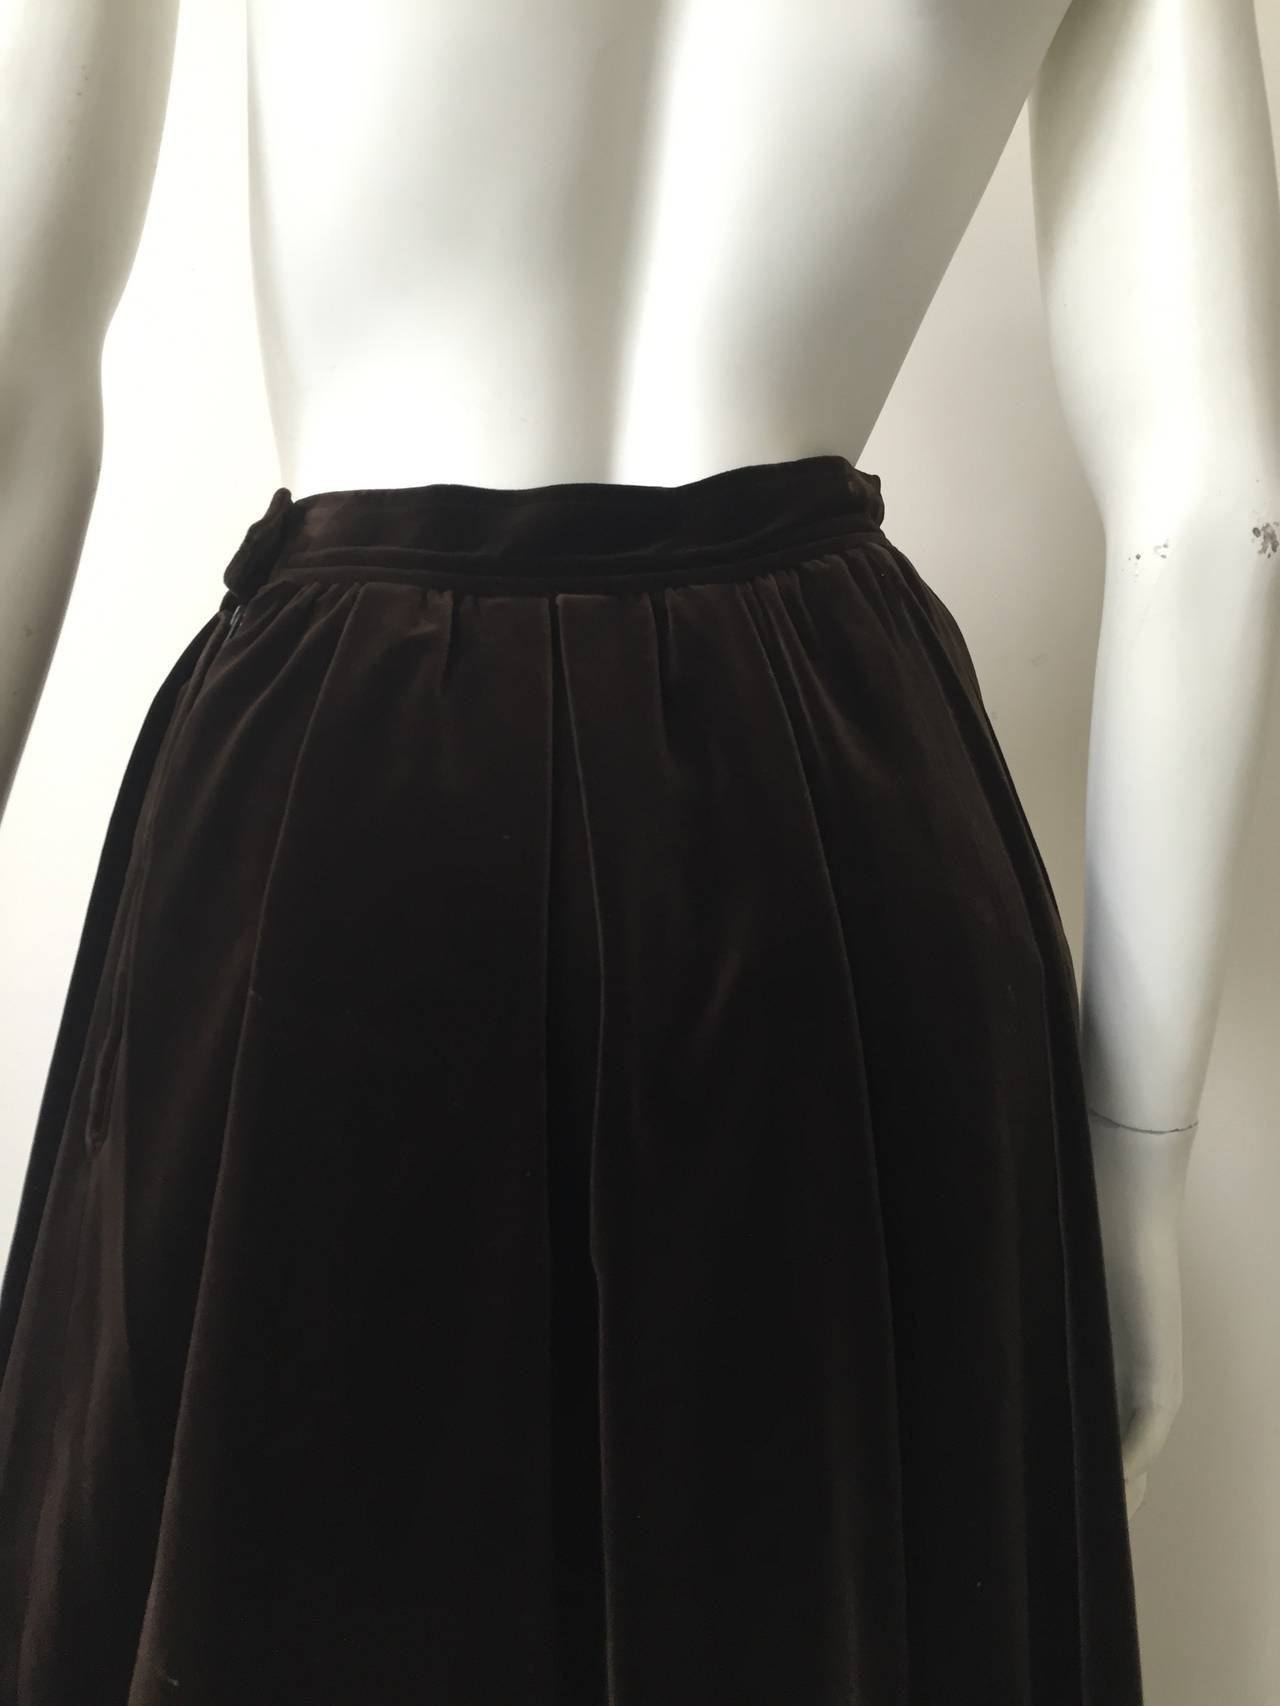 Saint Laurent Rive Gauche 70s velvet skirt with pockets size 6. 1